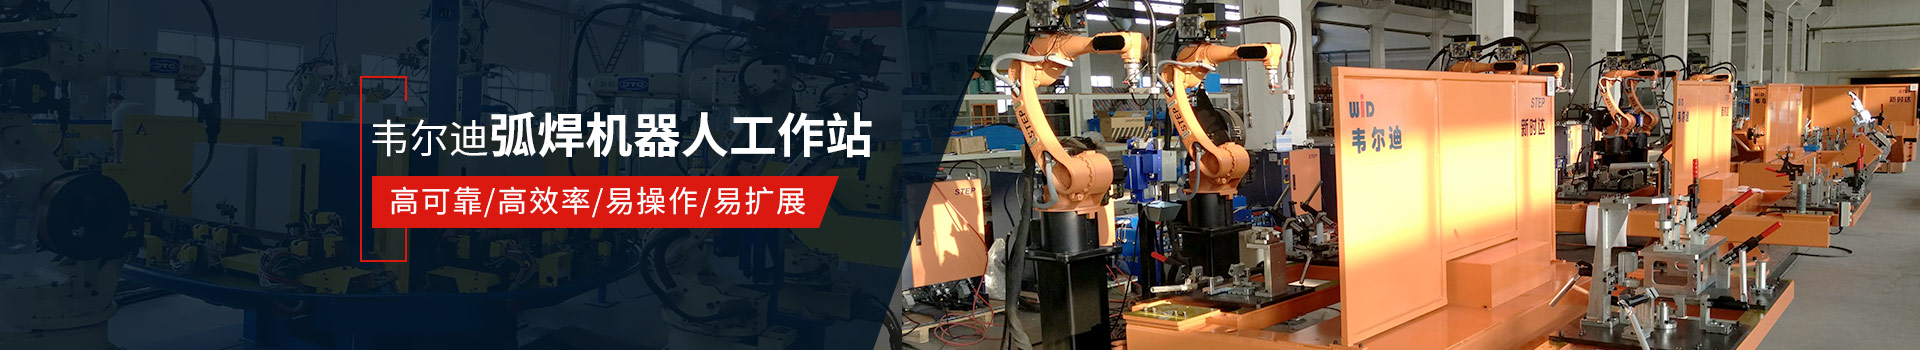 明升体育弧焊机器人工作站易操作、高效率